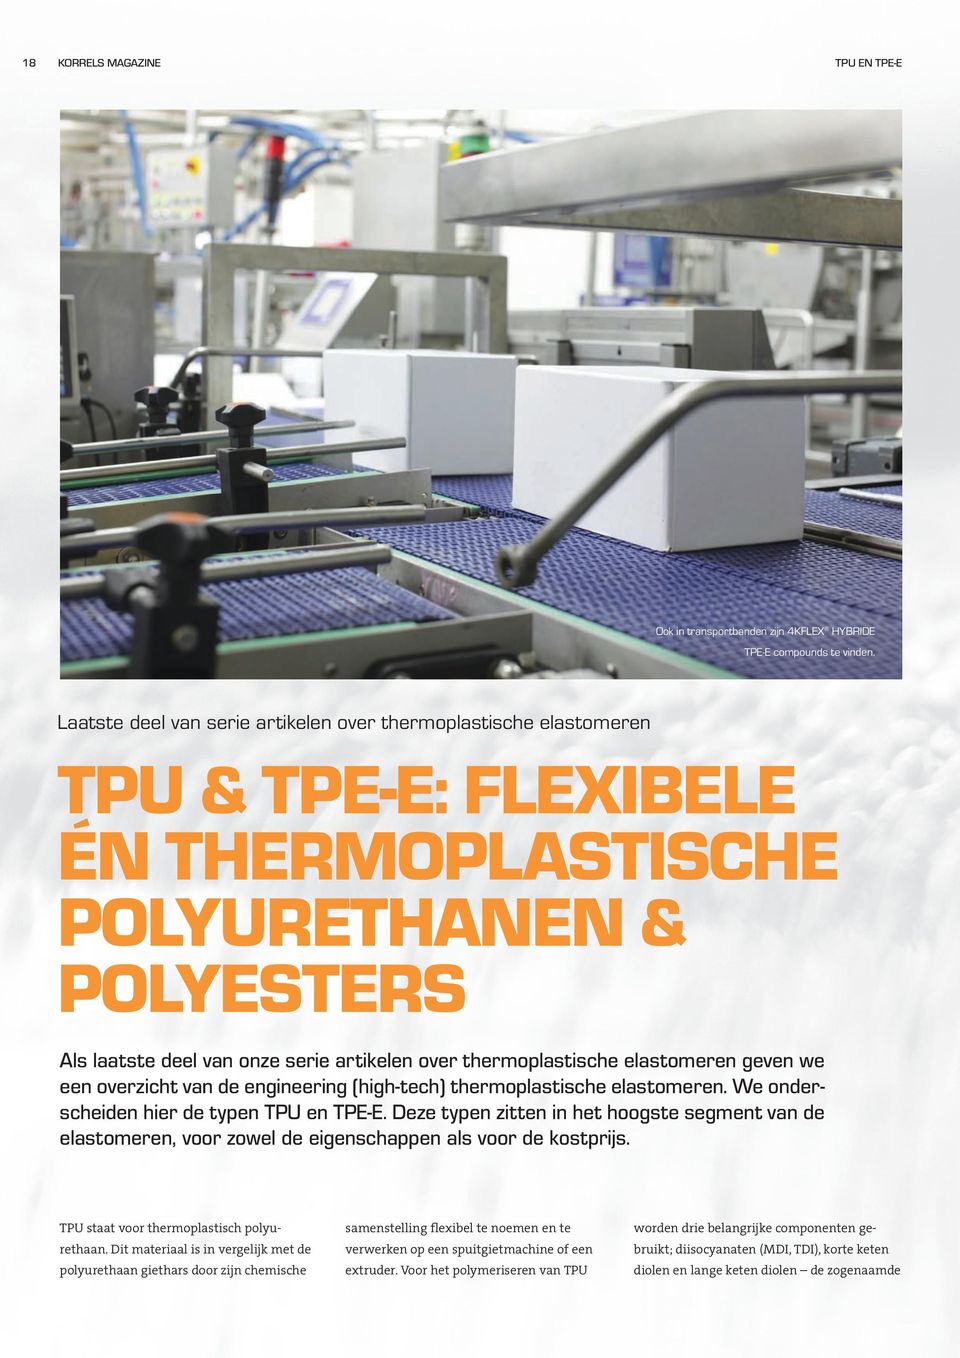 thermoplastische elastomeren geven we een overzicht van de engineering (high-tech) thermoplastische elastomeren. We onderscheiden hier de typen TPU en TPE-E.